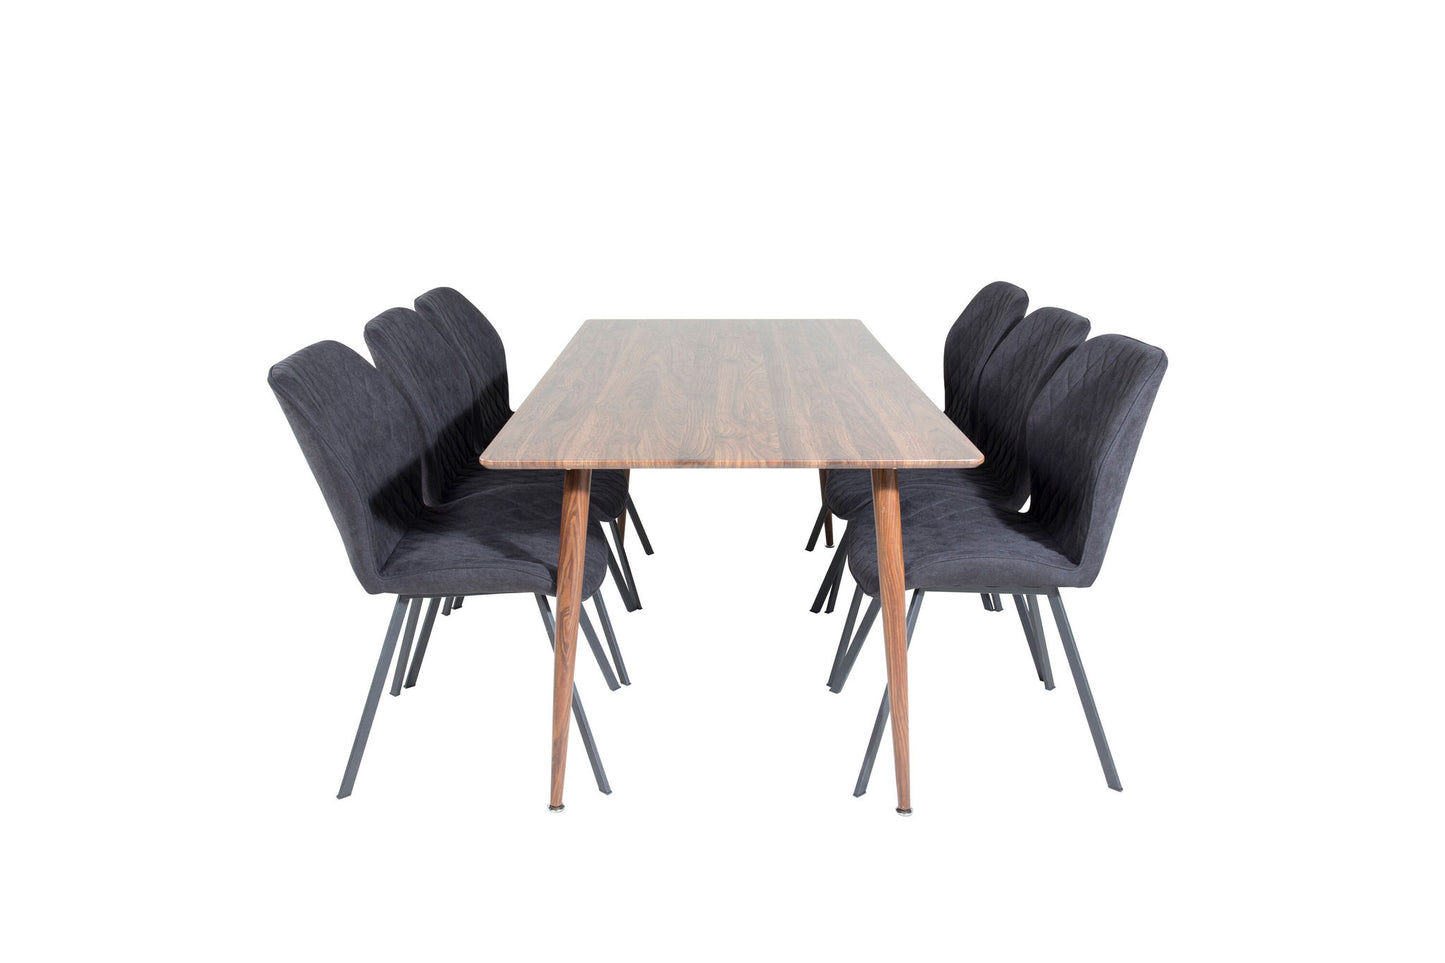 Polar - Spisebord, 180 cm - Valnød top - Valnød ben+Gemma Spisebordsstol - Sorte ben - Sort Stof